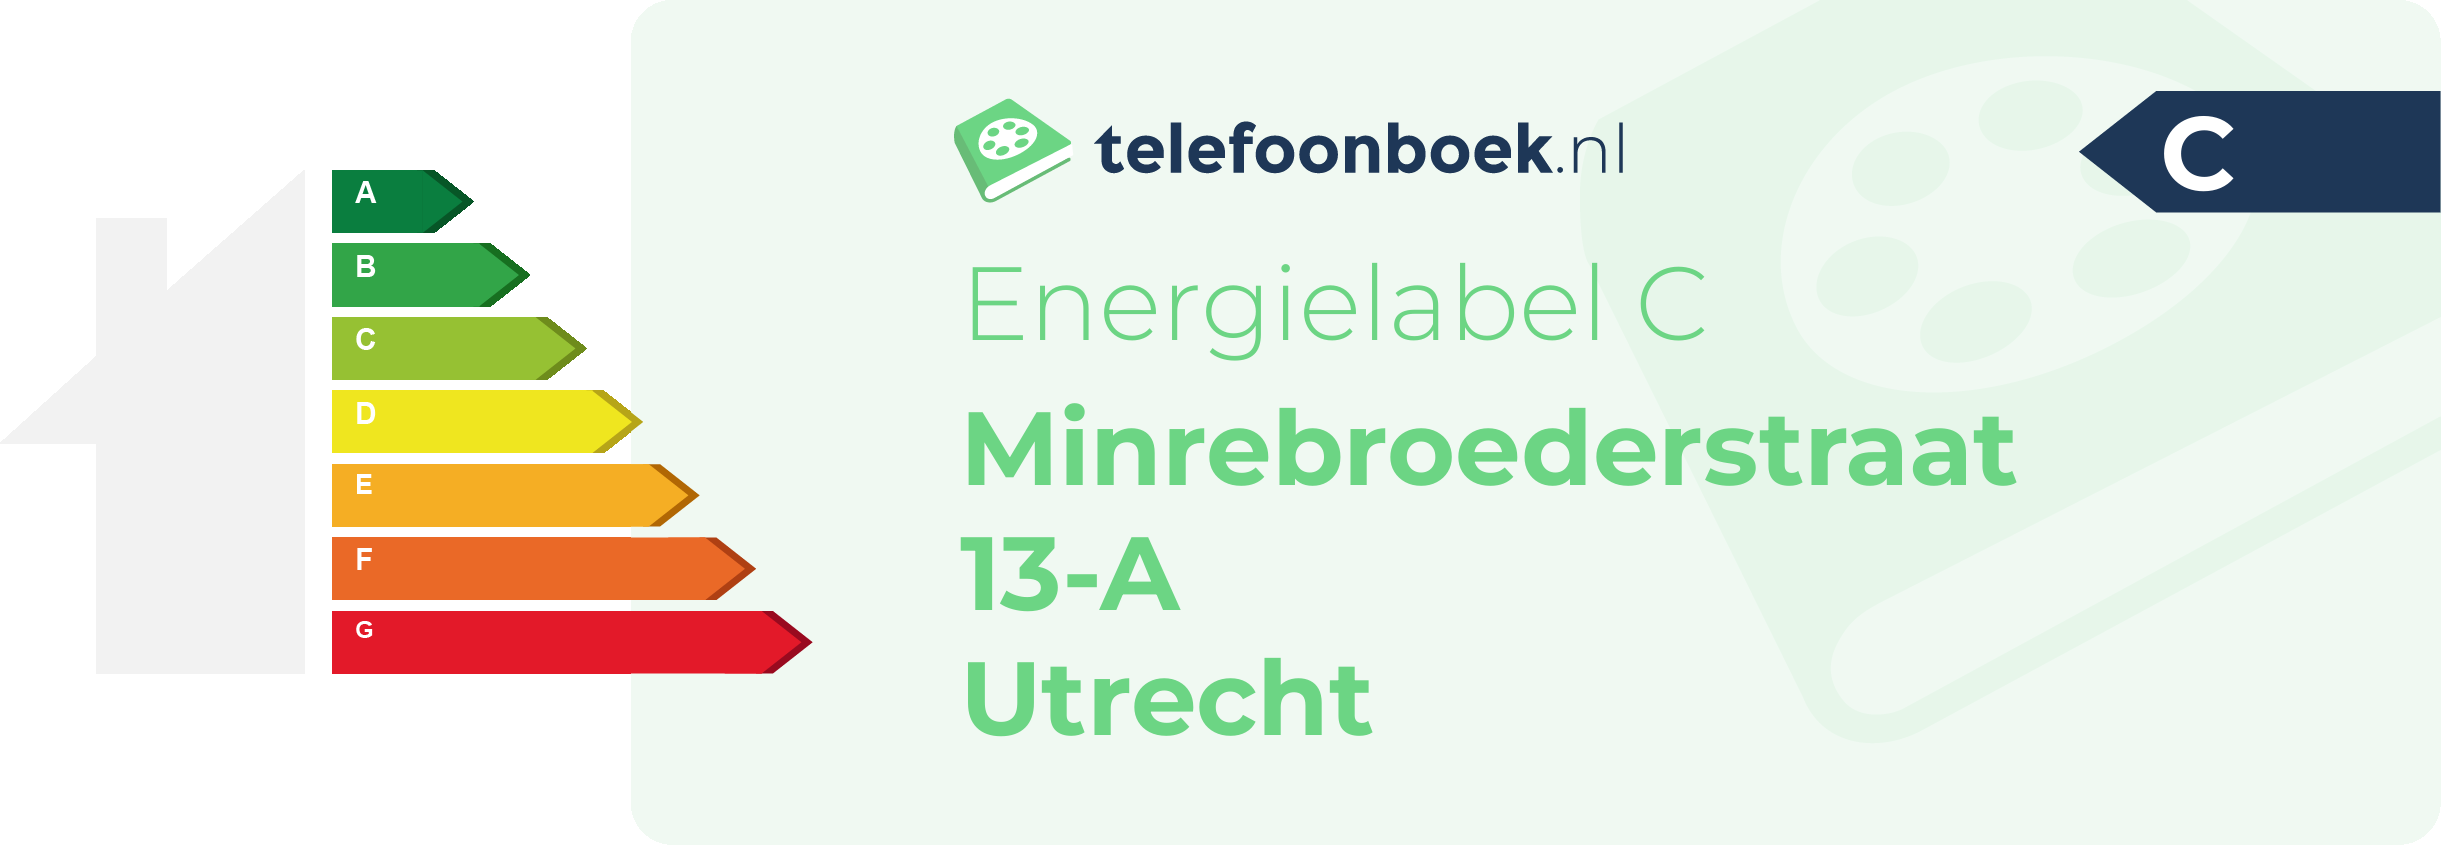 Energielabel Minrebroederstraat 13-A Utrecht